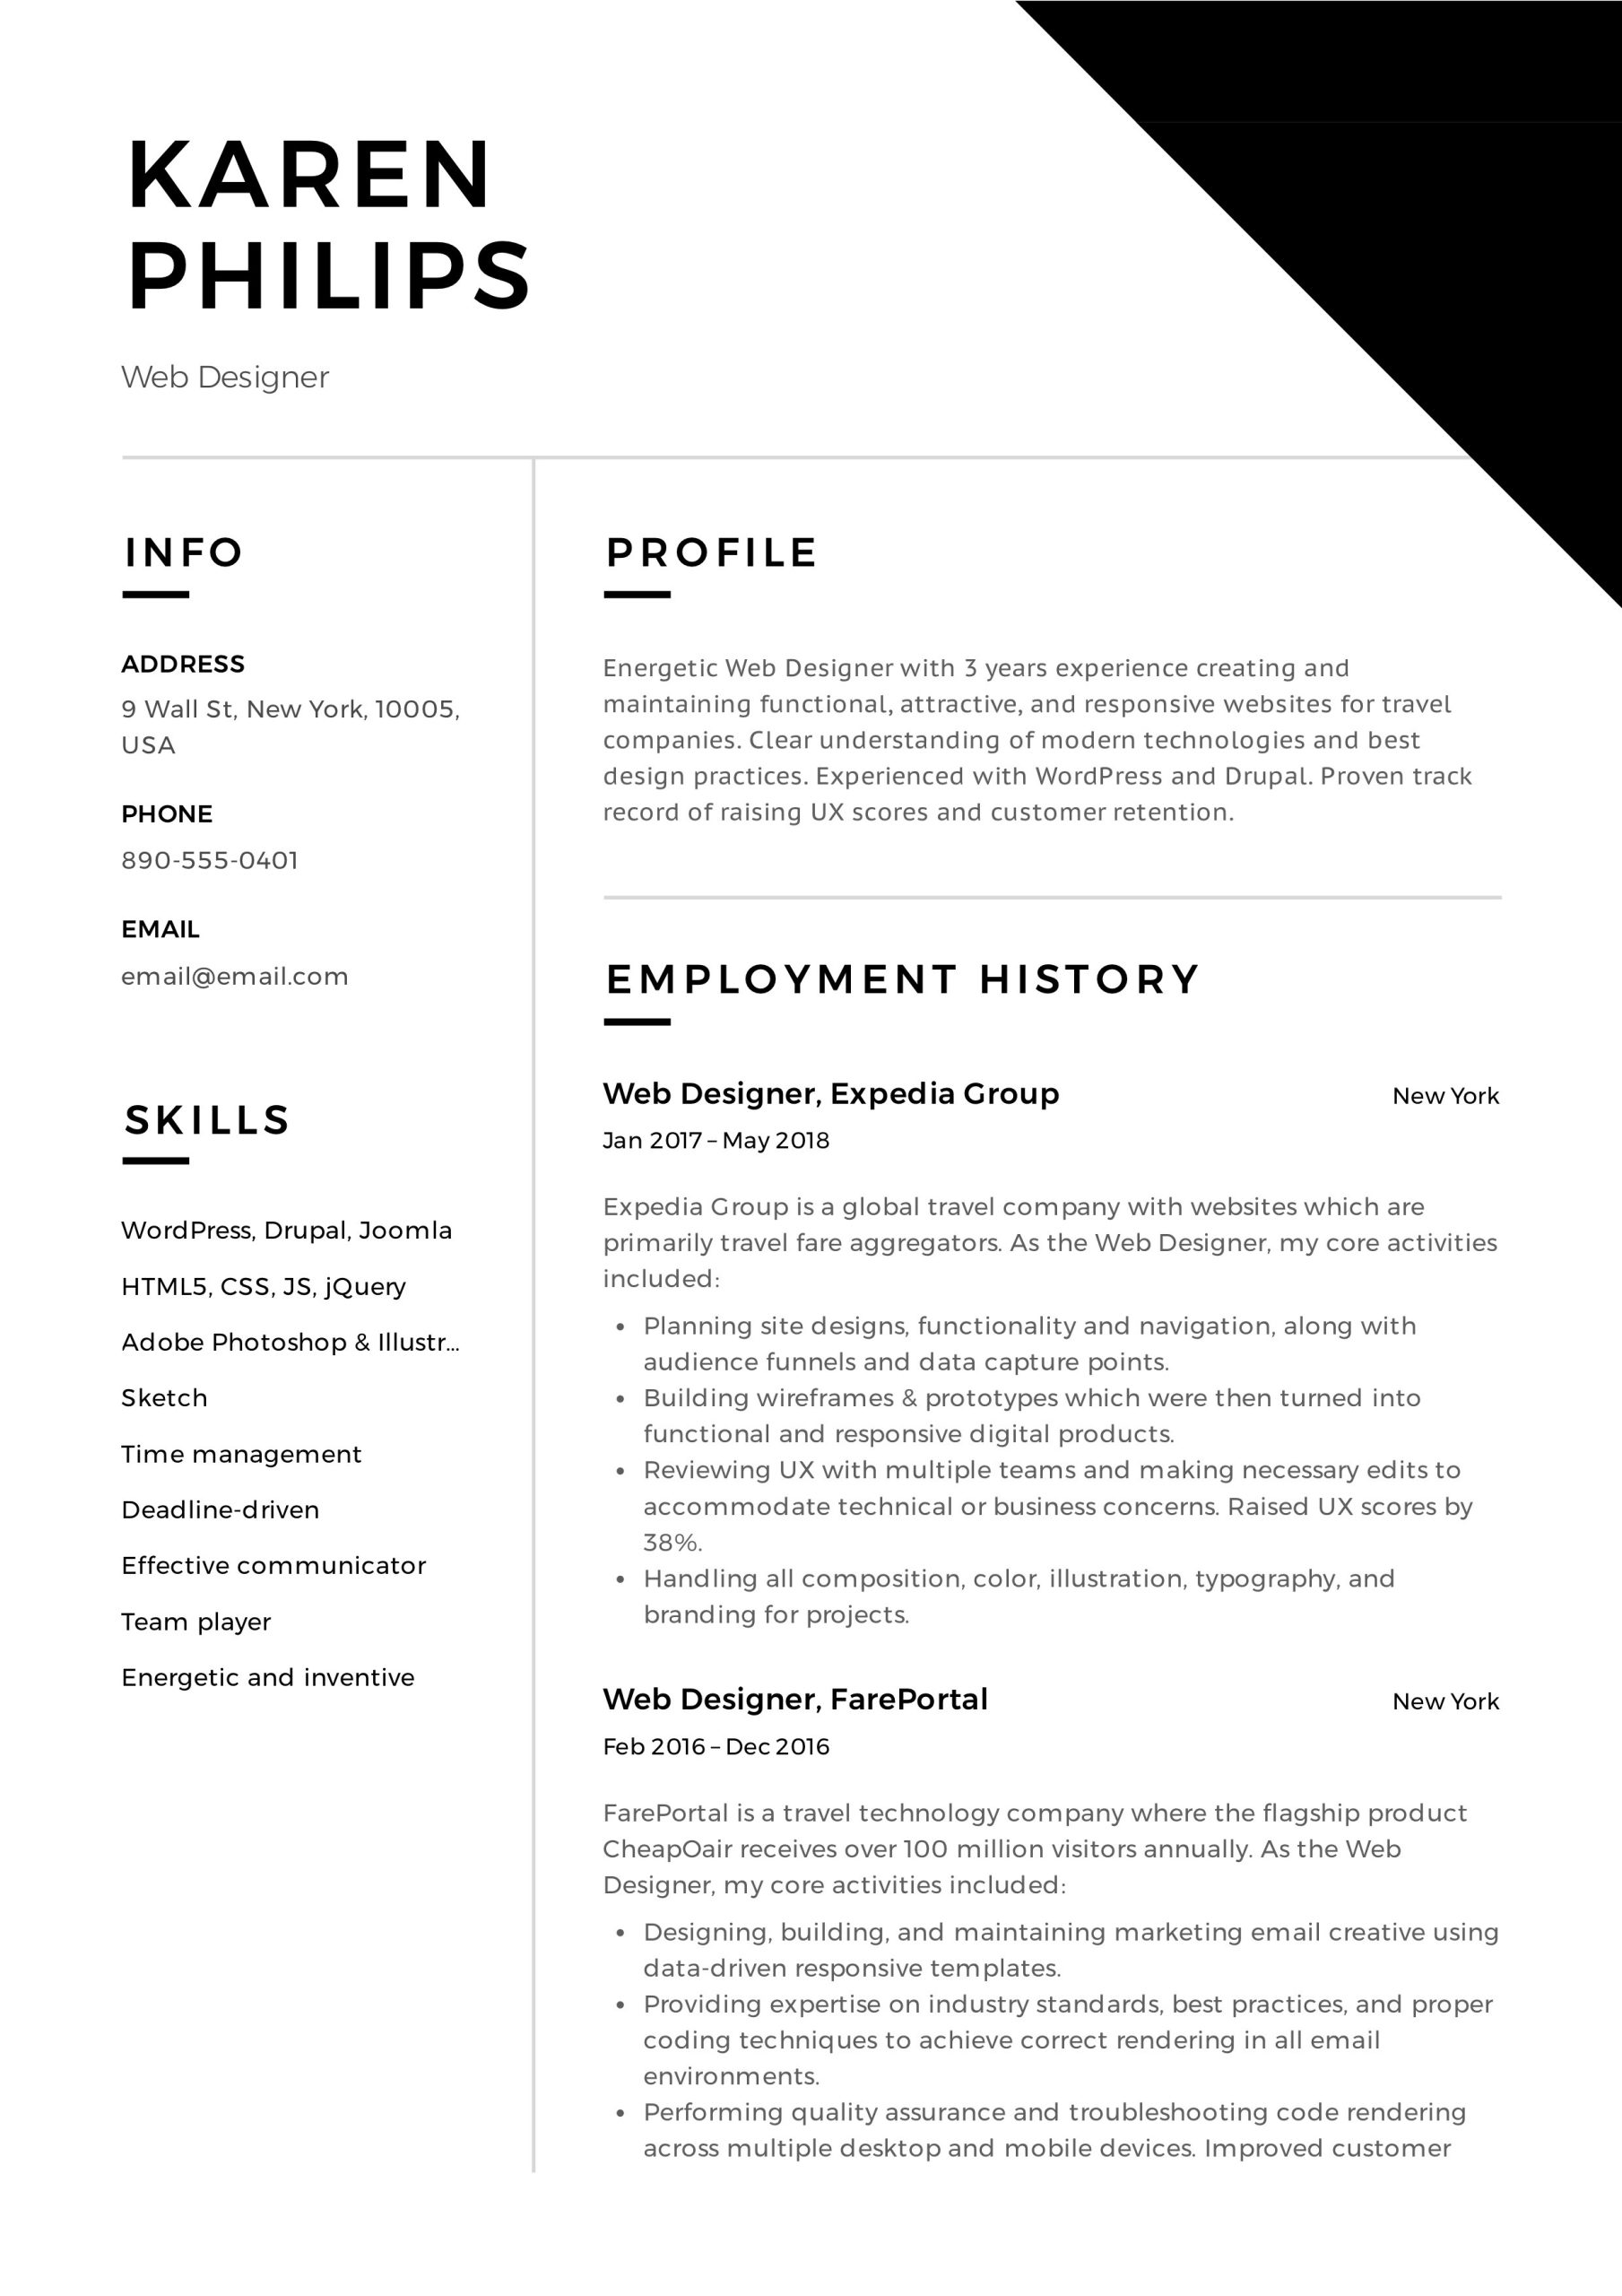 Sample Resume for Web Developer Advertising Agency 19 Free Web Designer Resume Examples & Guide Pdf 2020